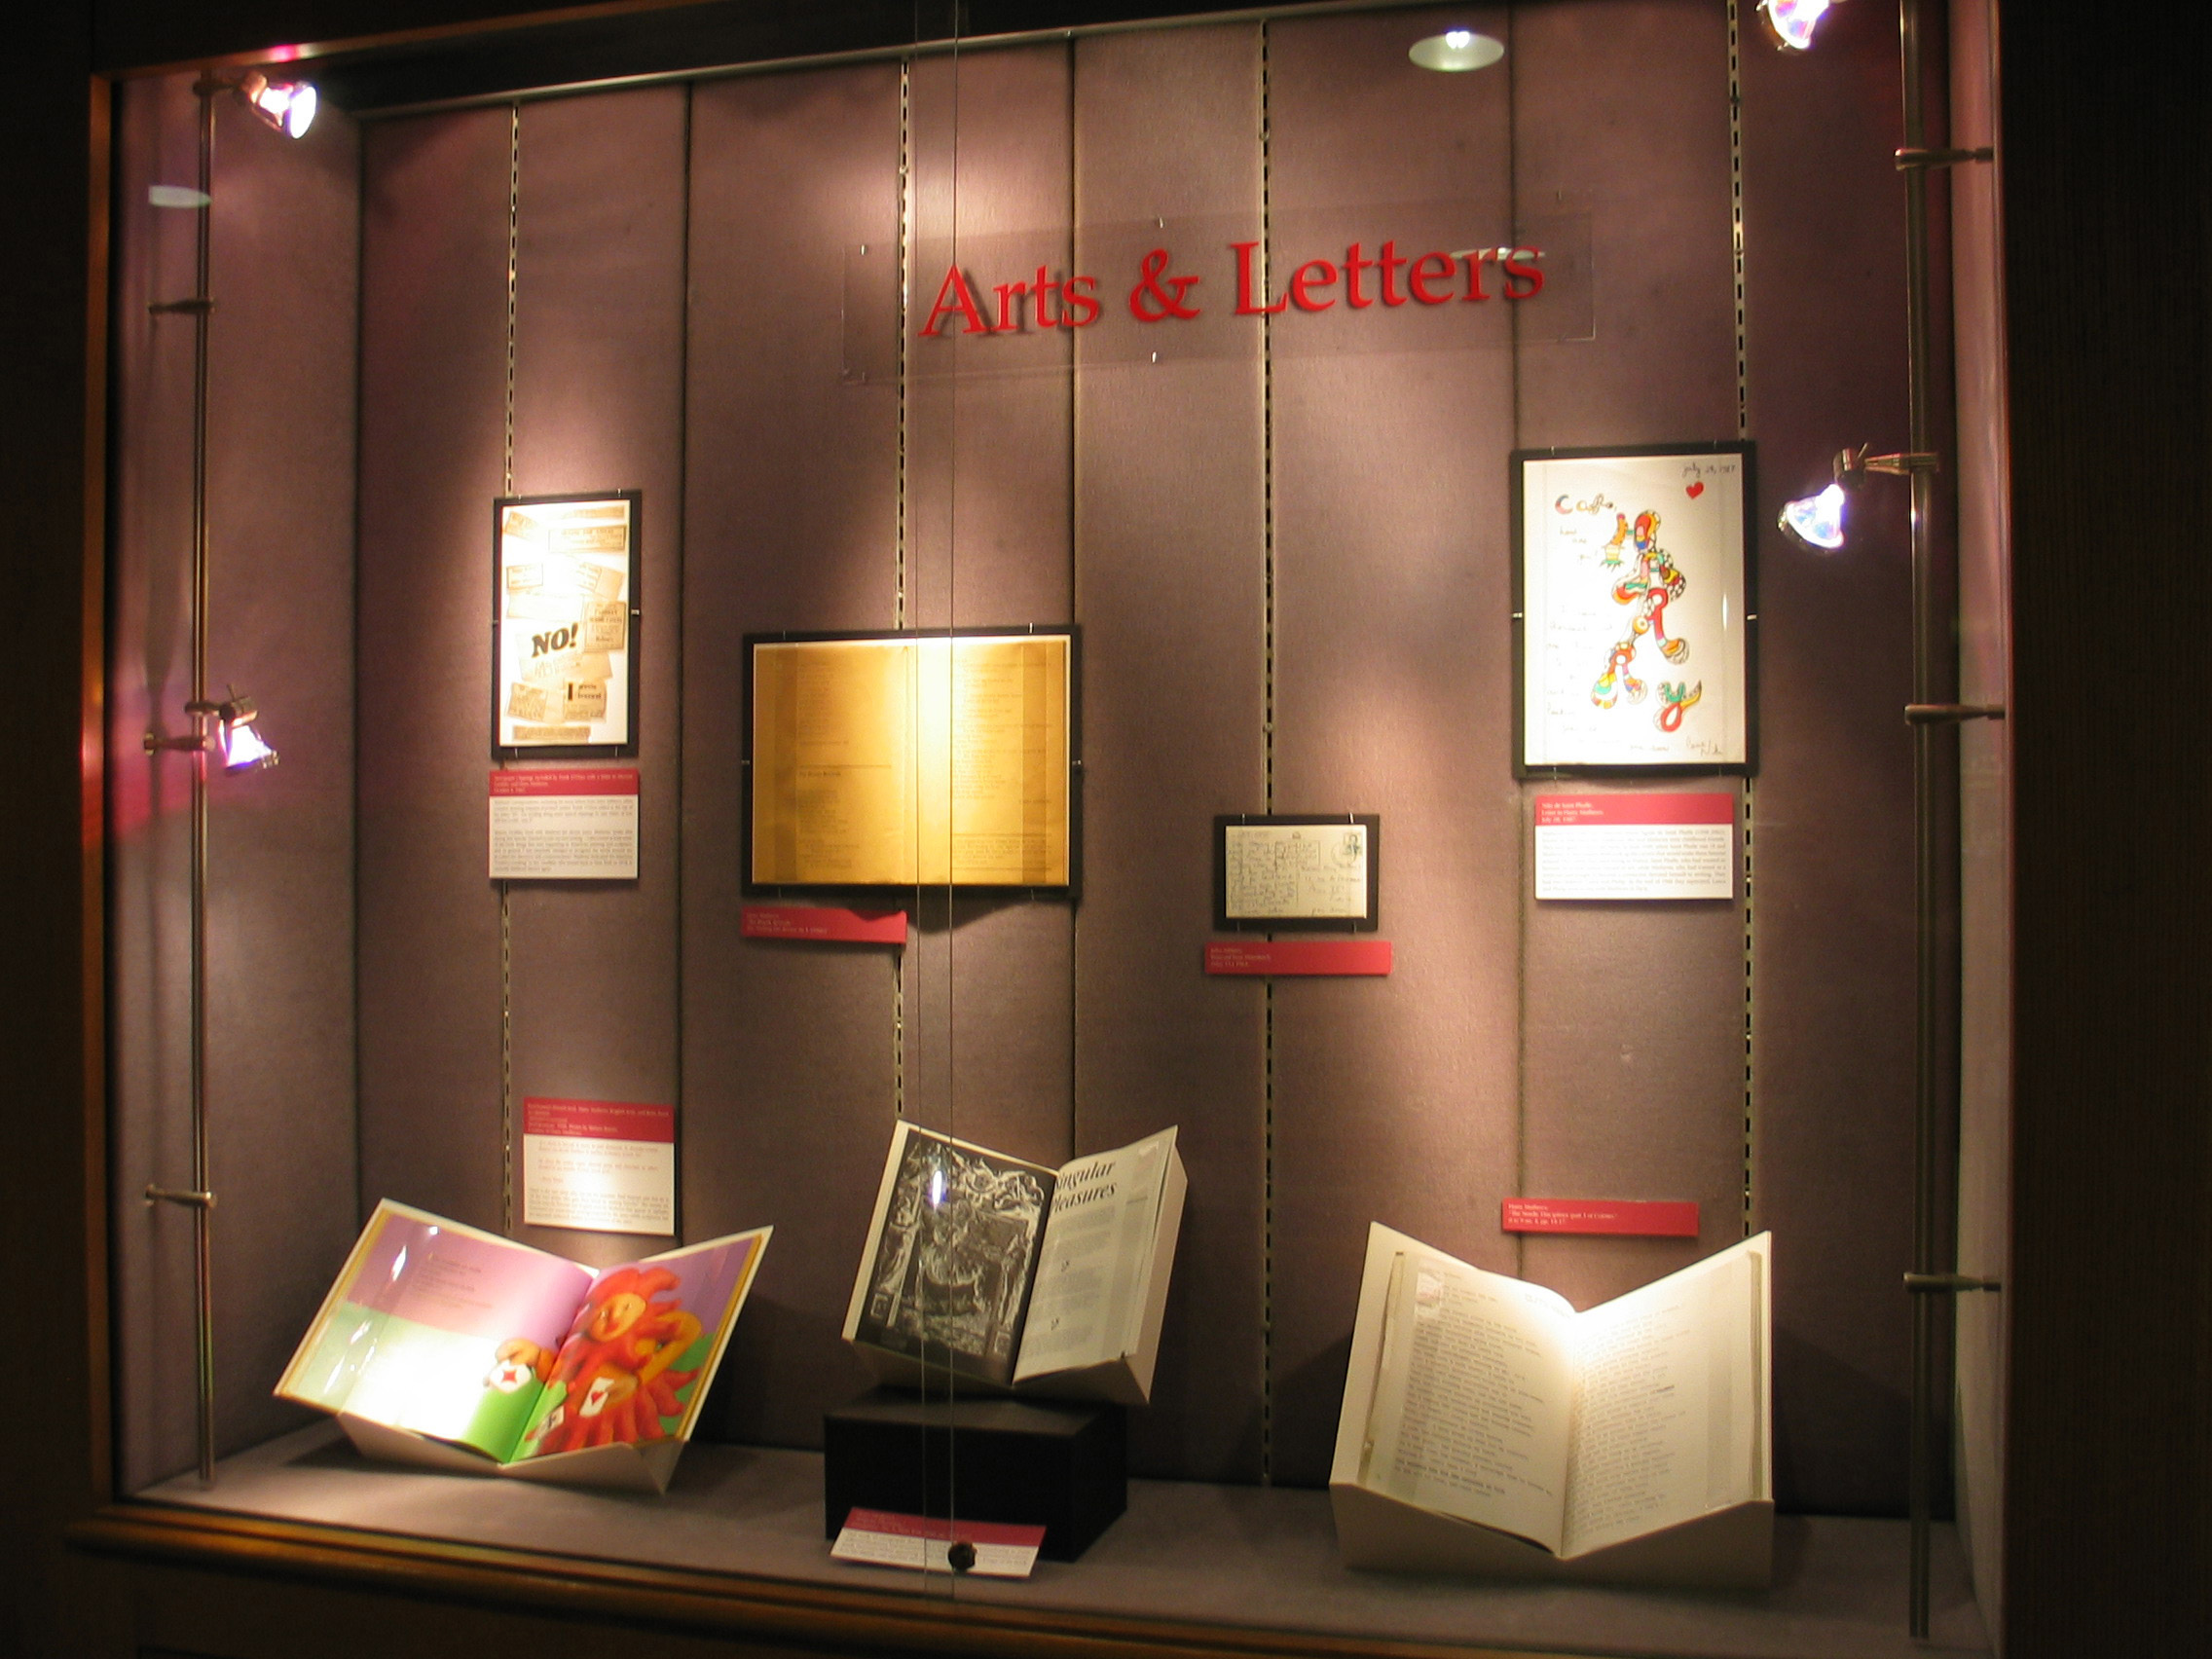 Case 2 - Arts & Letters